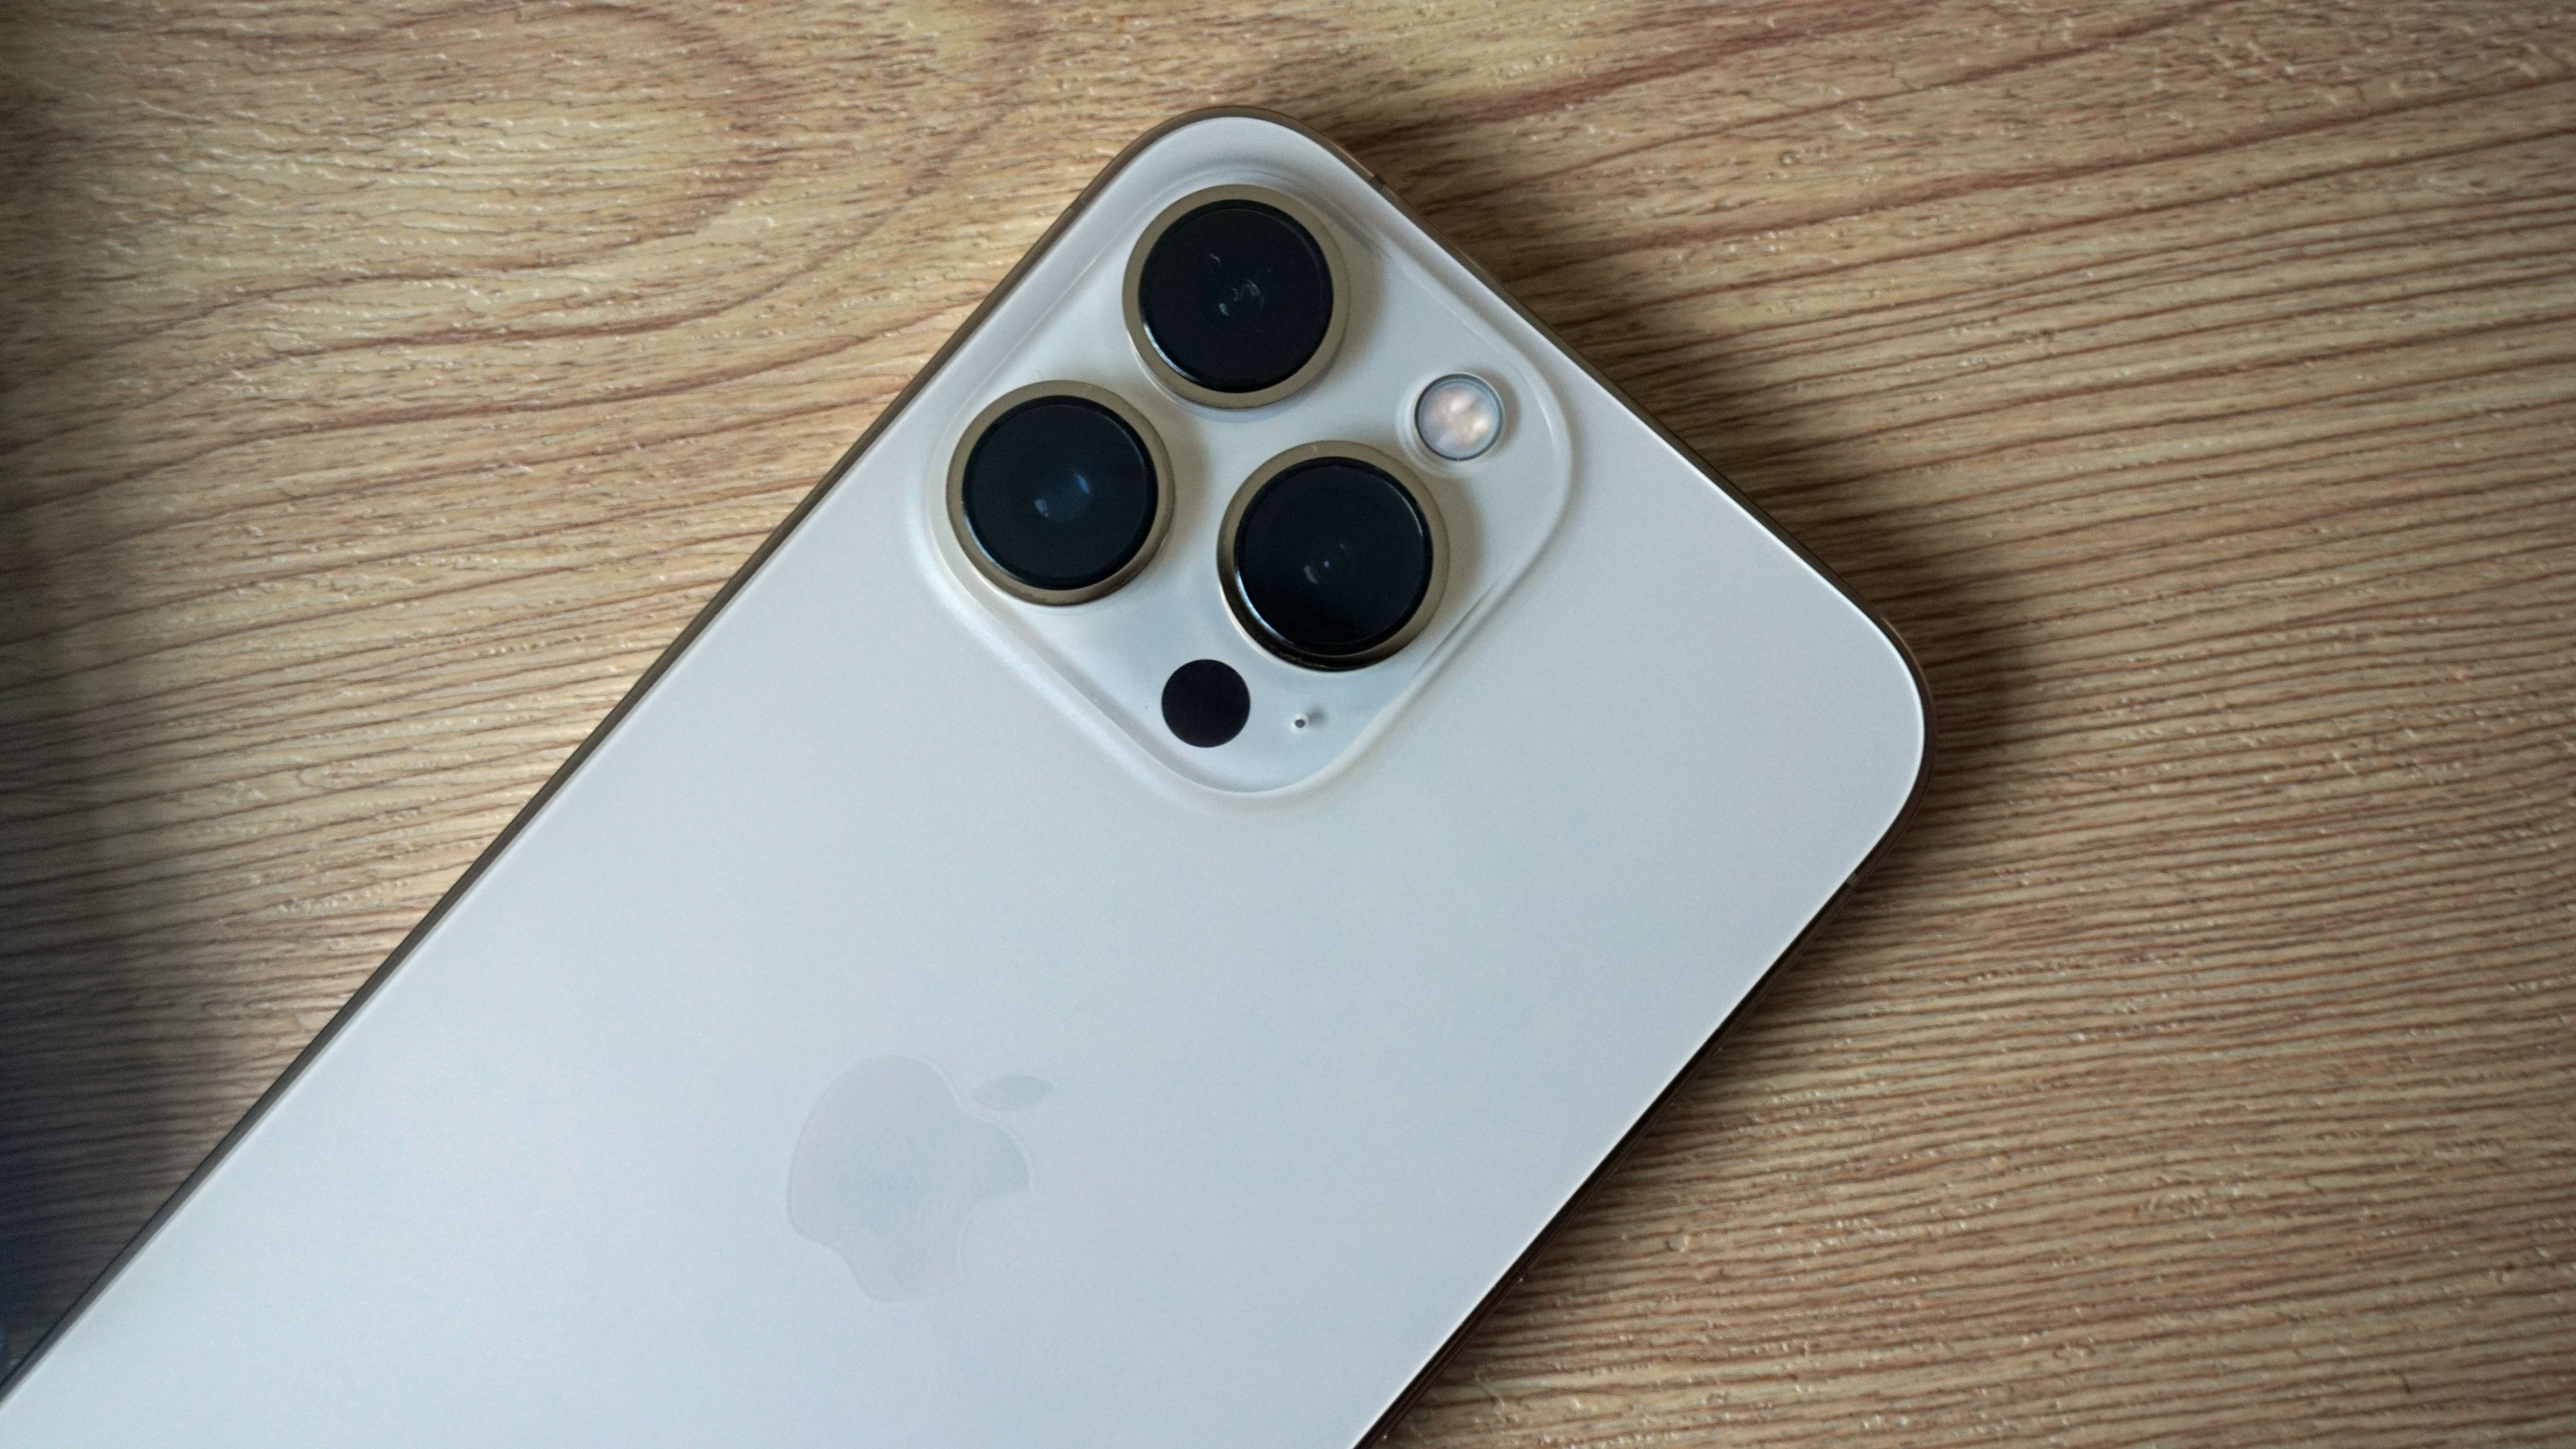 Объективы камеры iPhone 14 Pro выглядят намного больше, чем у iPhone 13 Pro.